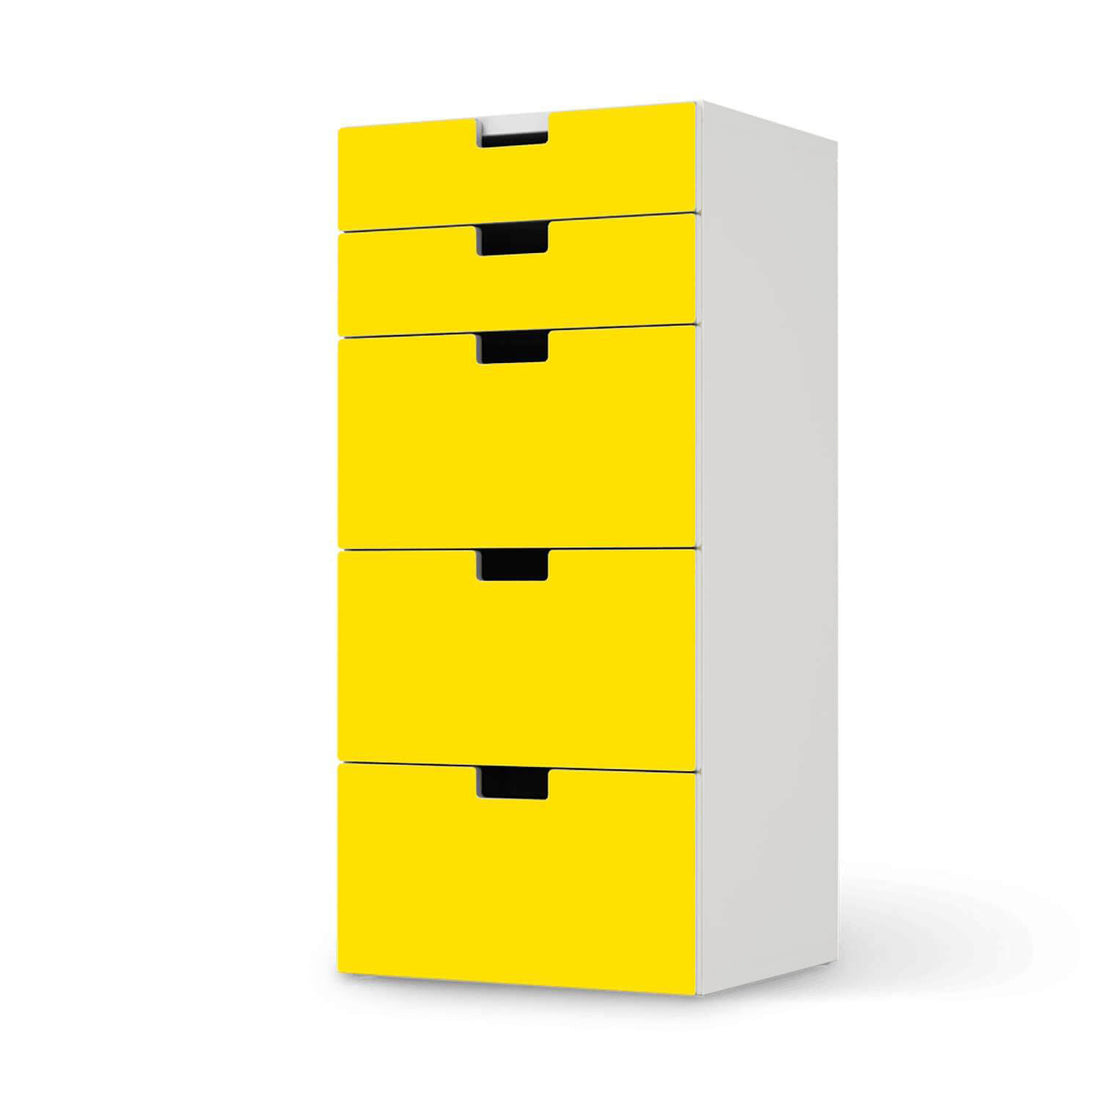 Möbel Klebefolie Gelb Dark - IKEA Stuva Kommode - 5 Schubladen  - weiss